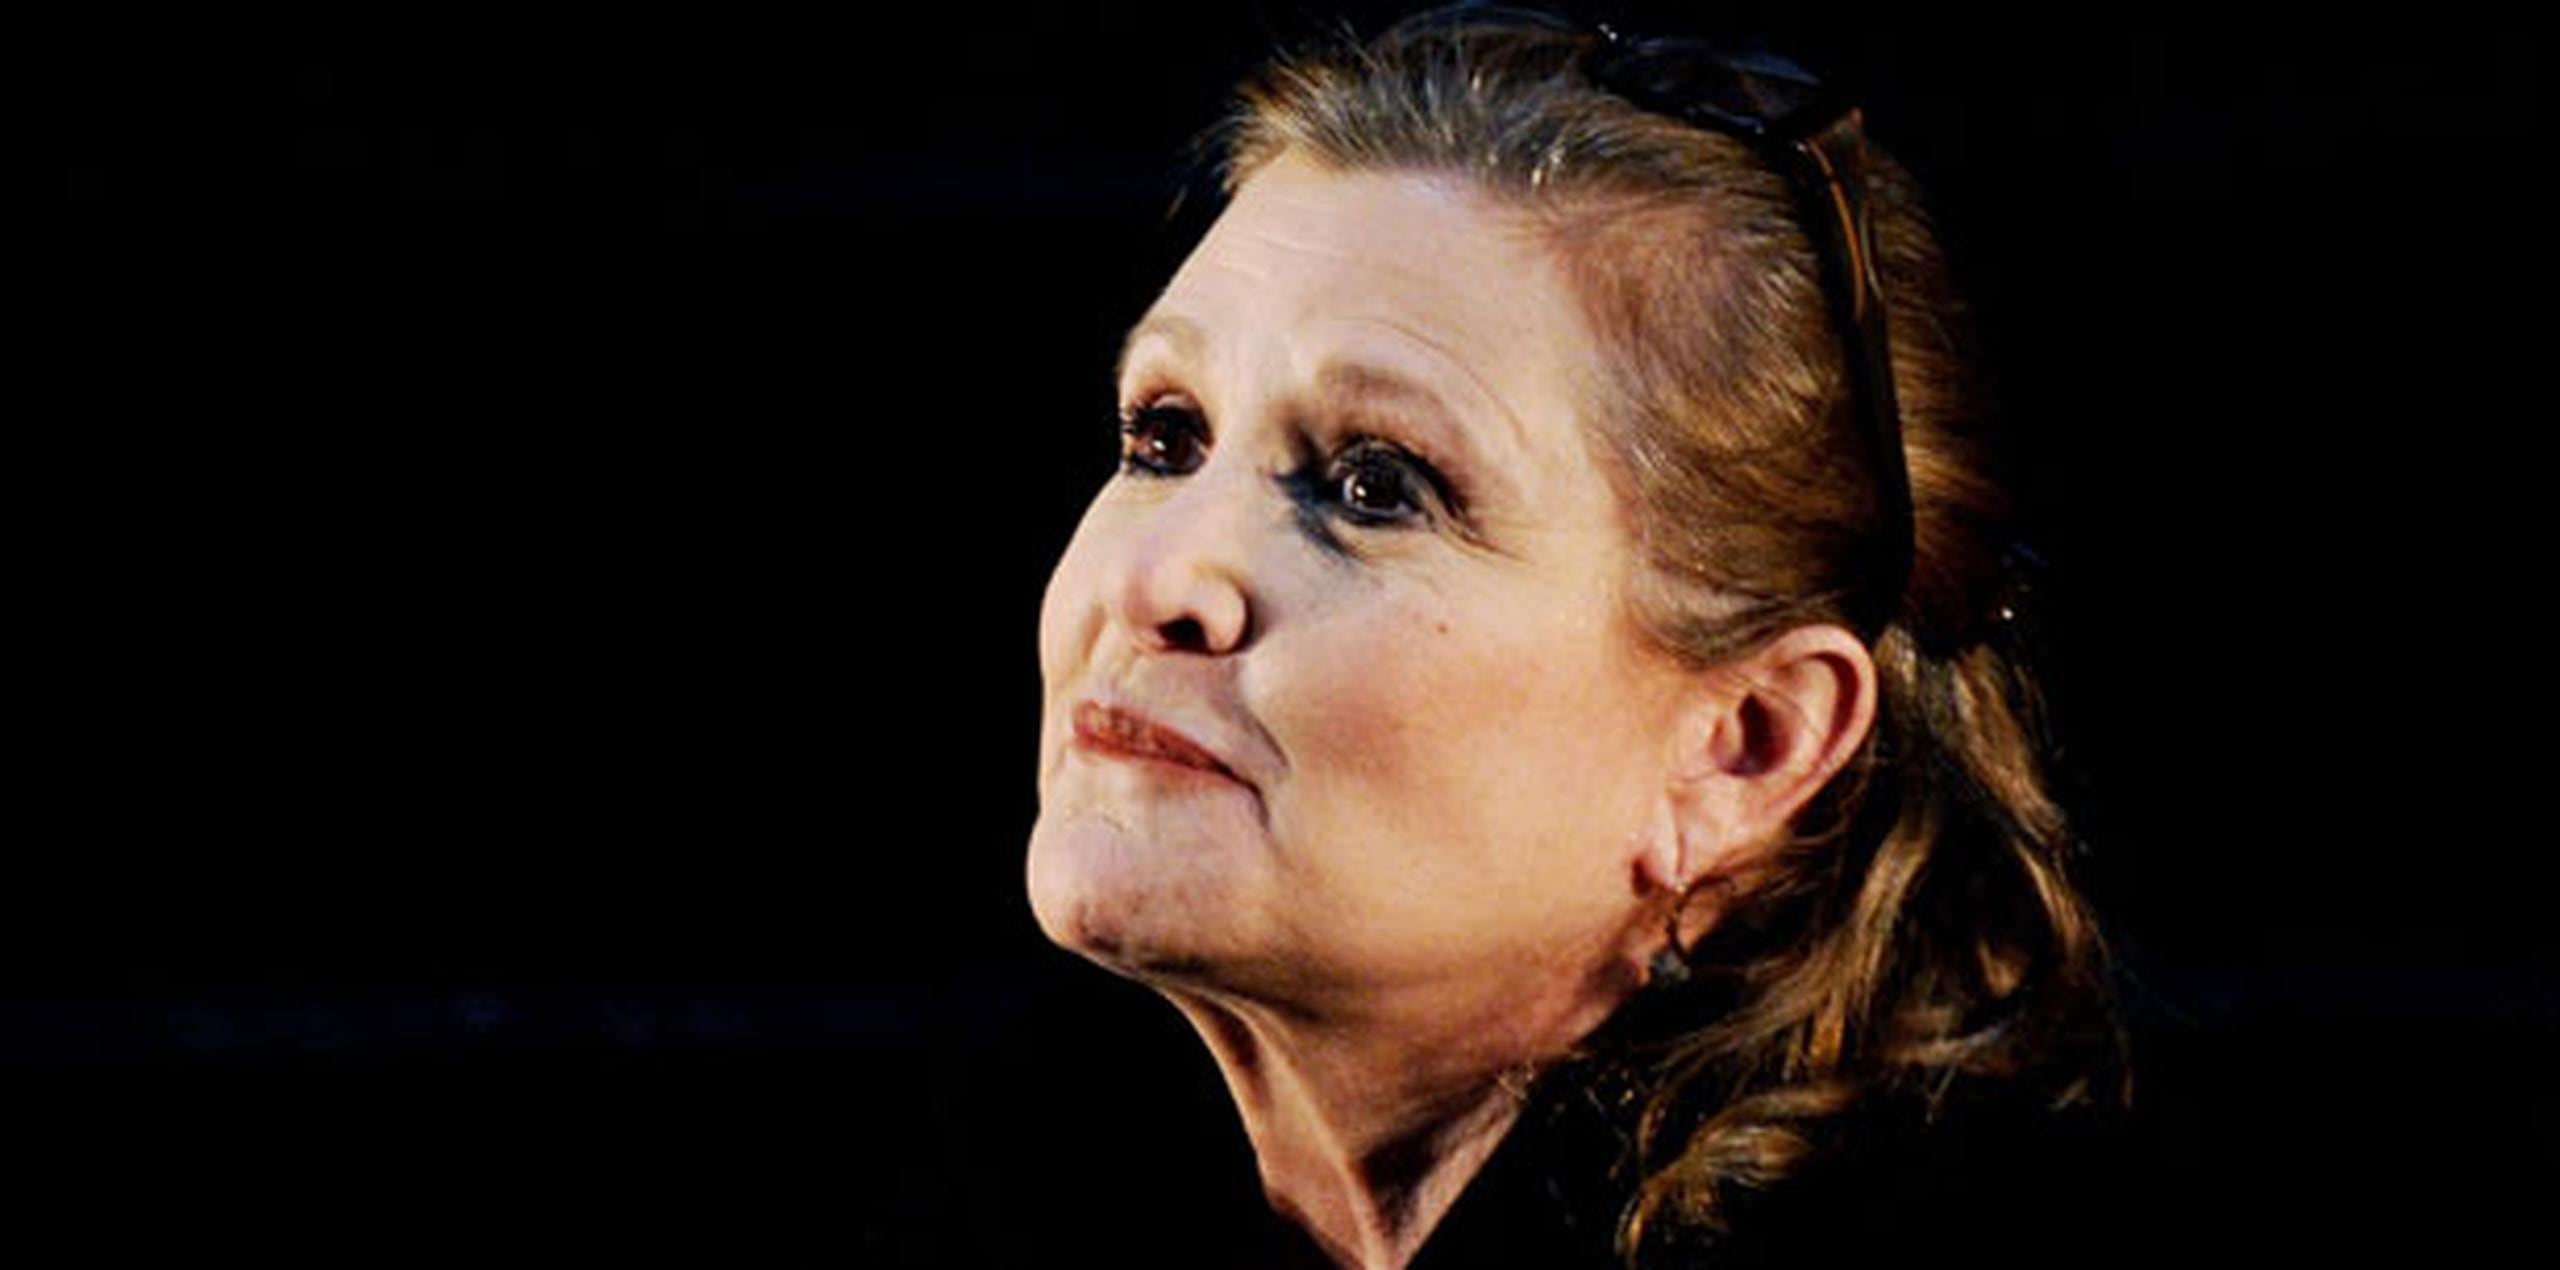 "Tristemente, Carrie no estará en el episodio IX (sin título aún). Veremos un montón de Carrie en el episodio VIII ("Star Wars: The Last Jedi") y eso es estupendo", dijo la presidenta de Lucasfilm, Kathleen Kennedy. (Archivo)